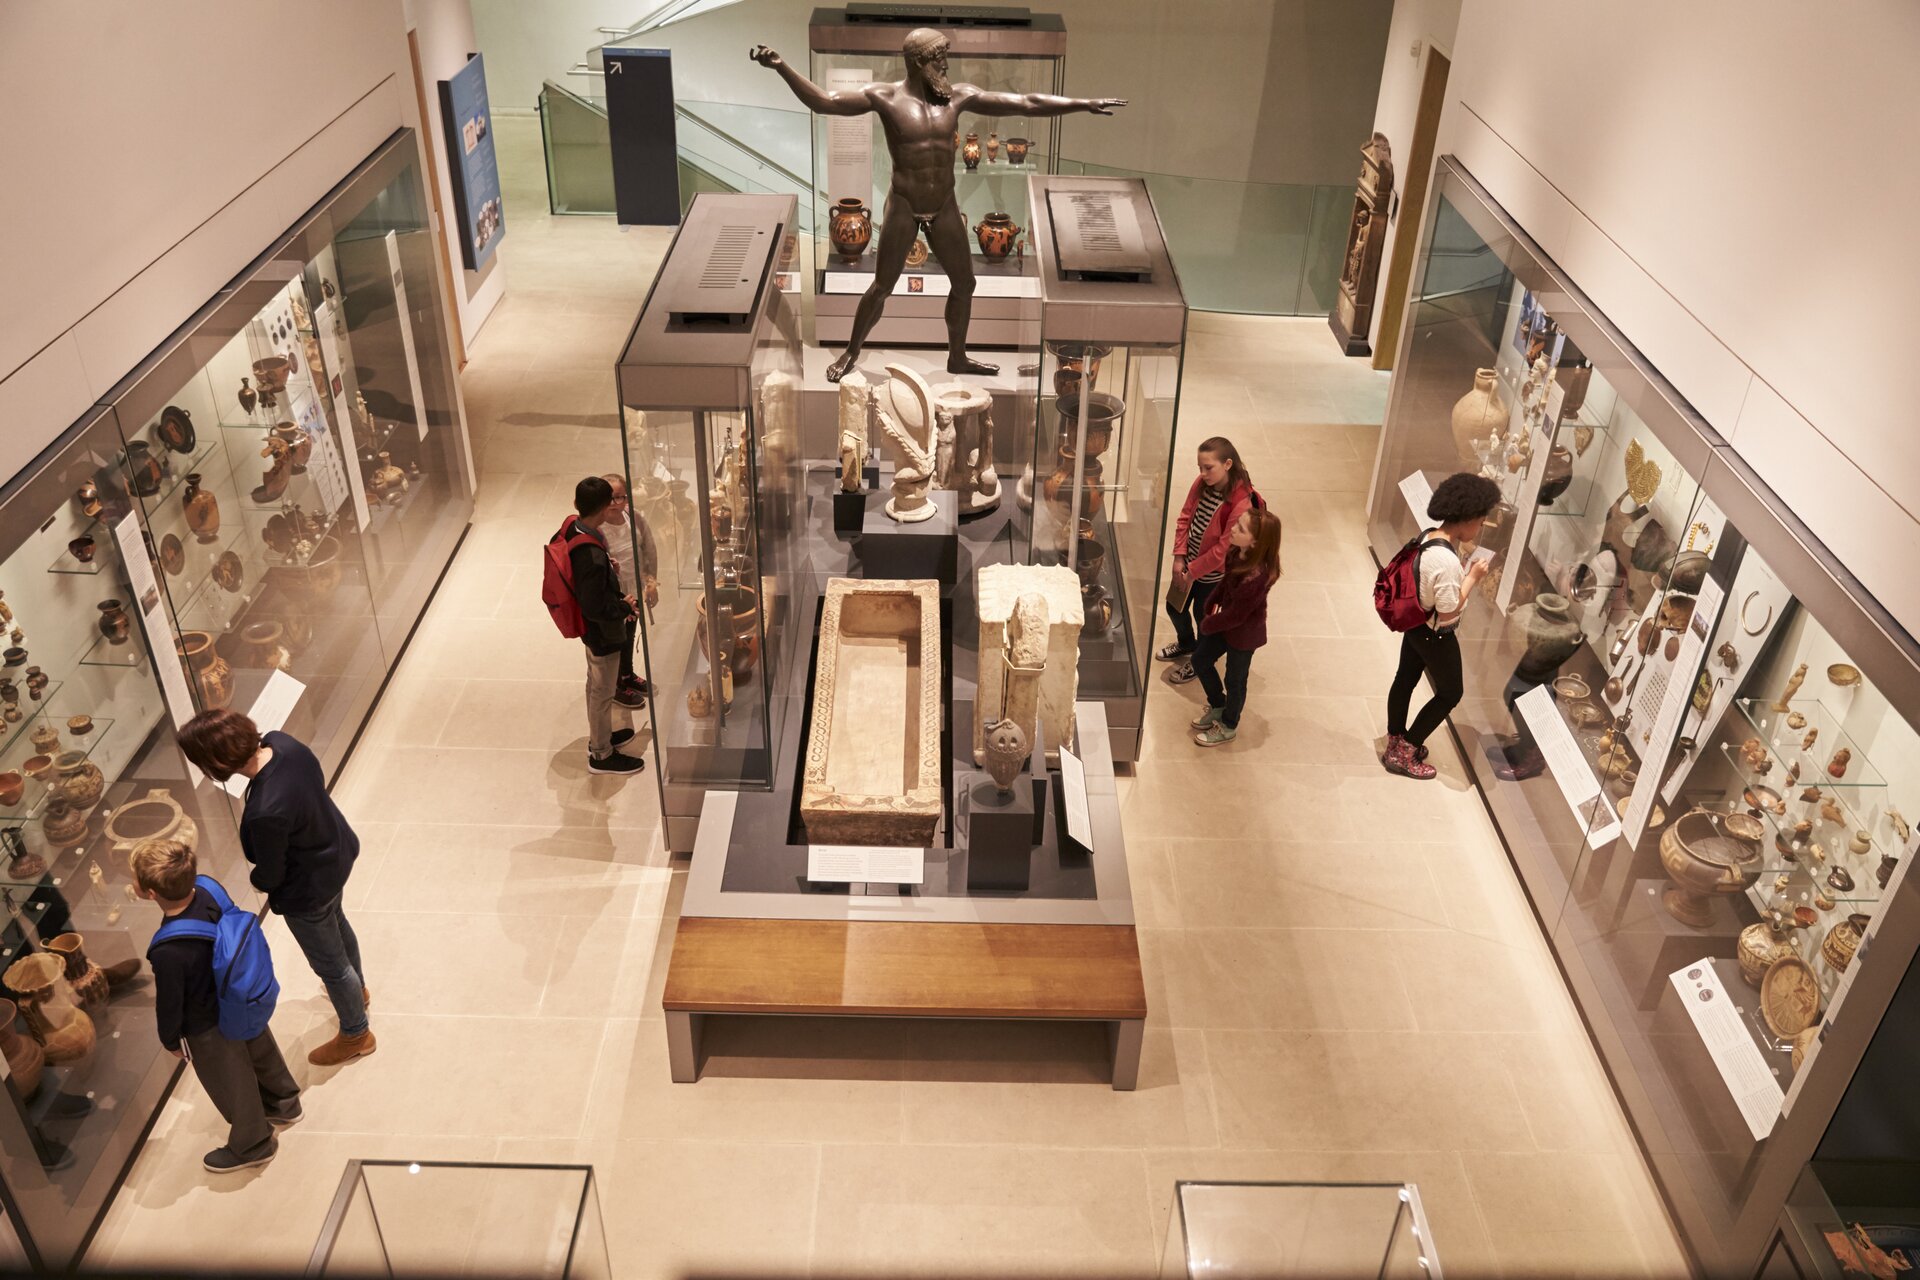 ilustracja przedstawia wnętrze muzeum. Na ścianach po lewej i prawej stronie rozmieszczone są oszklone gabloty z eksponatami sztuki starożytnej. W środku sali znajduje się duża przeszklona gablota a obok niej ekspozycja prezentowana na drewnianym podeście w kształcie stołu. W muzealnej sali widoczne są osoby oglądające prezentowane zbiory.